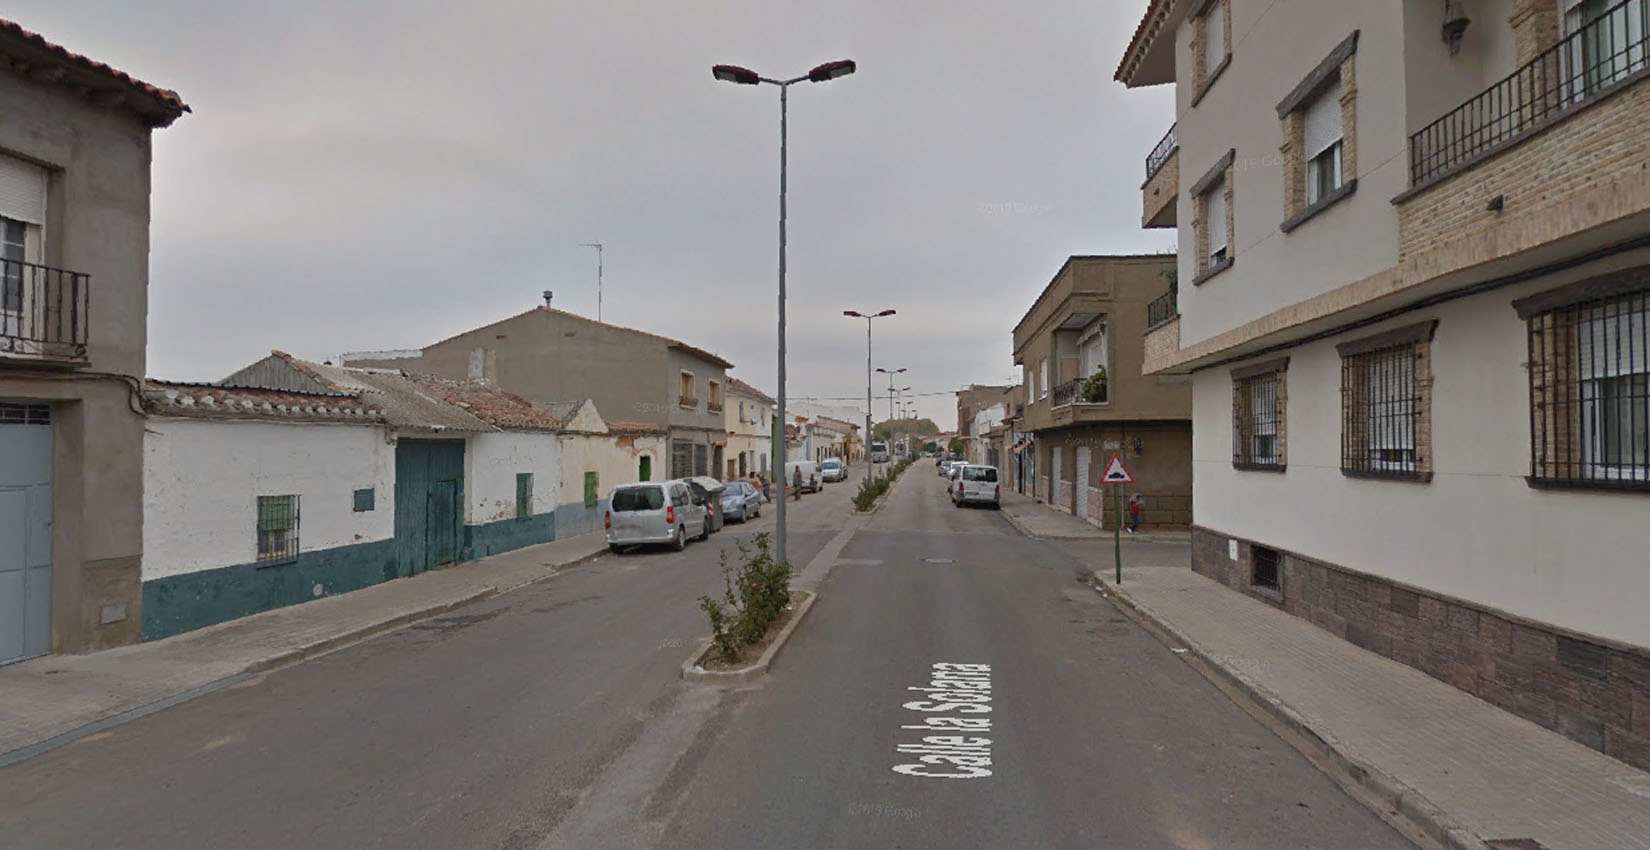 El trágico accidente se ha producido en la calle Solana, en Argamasilla de Alba.